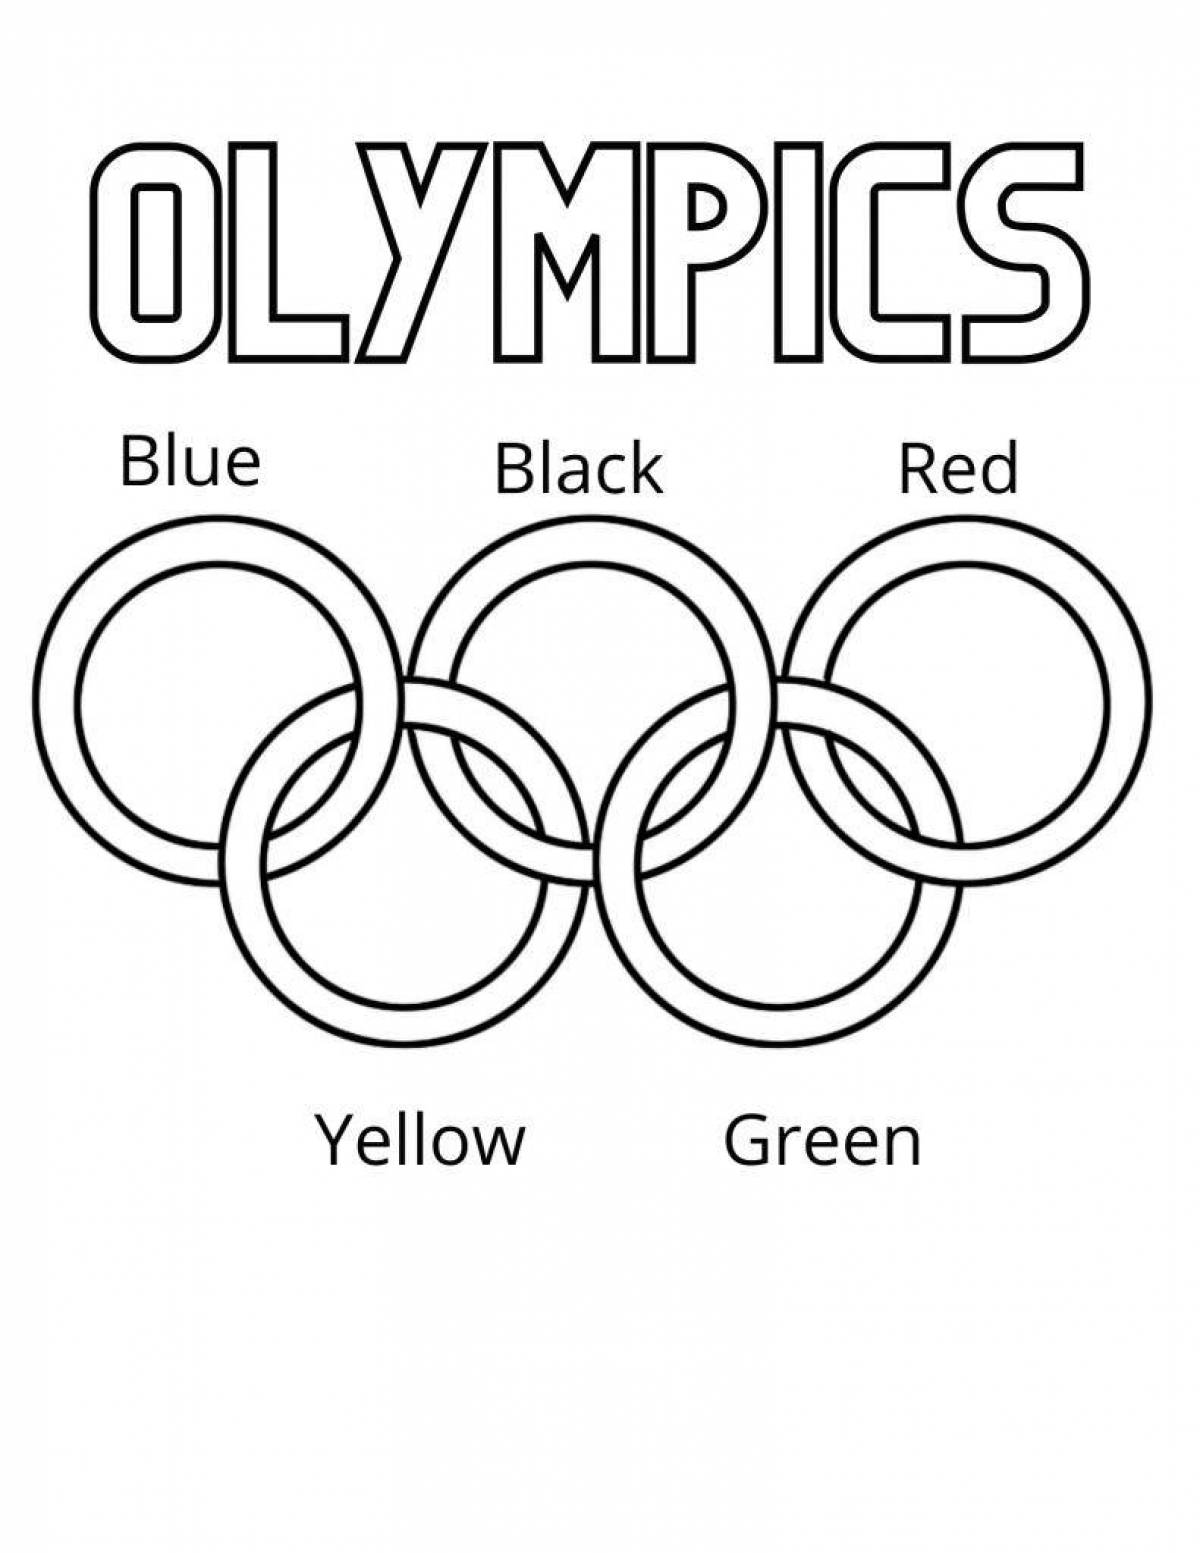 Увлекательная олимпиада раскрасок